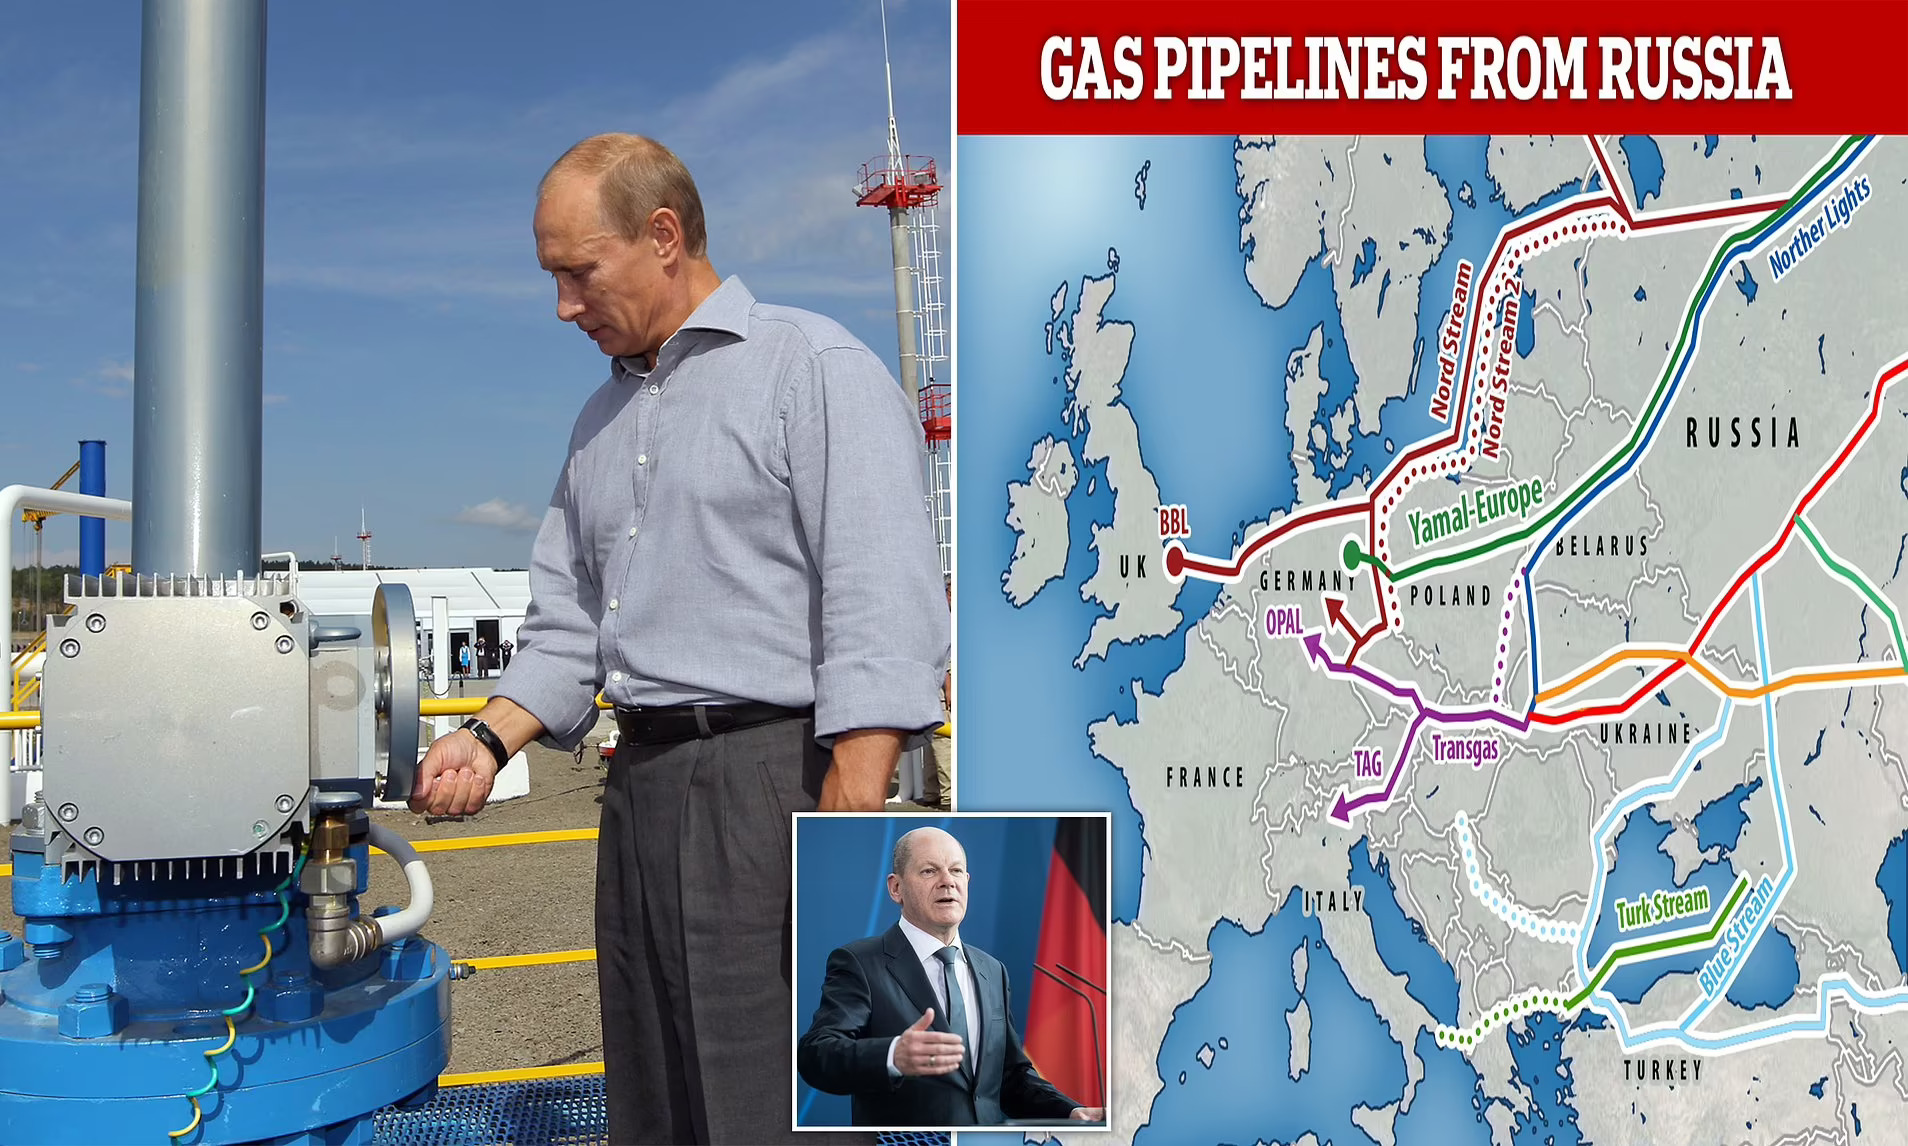 Moscow đang thực hiện rõ nét lời đe dọa ngừng cung cấp khí đốt cho các quốc gia từ chối yêu cầu mới của Tổng thống Vladimir Putin về việc thanh toán nhiên liệu bằng đồng rúp. Ảnh: @AFP.